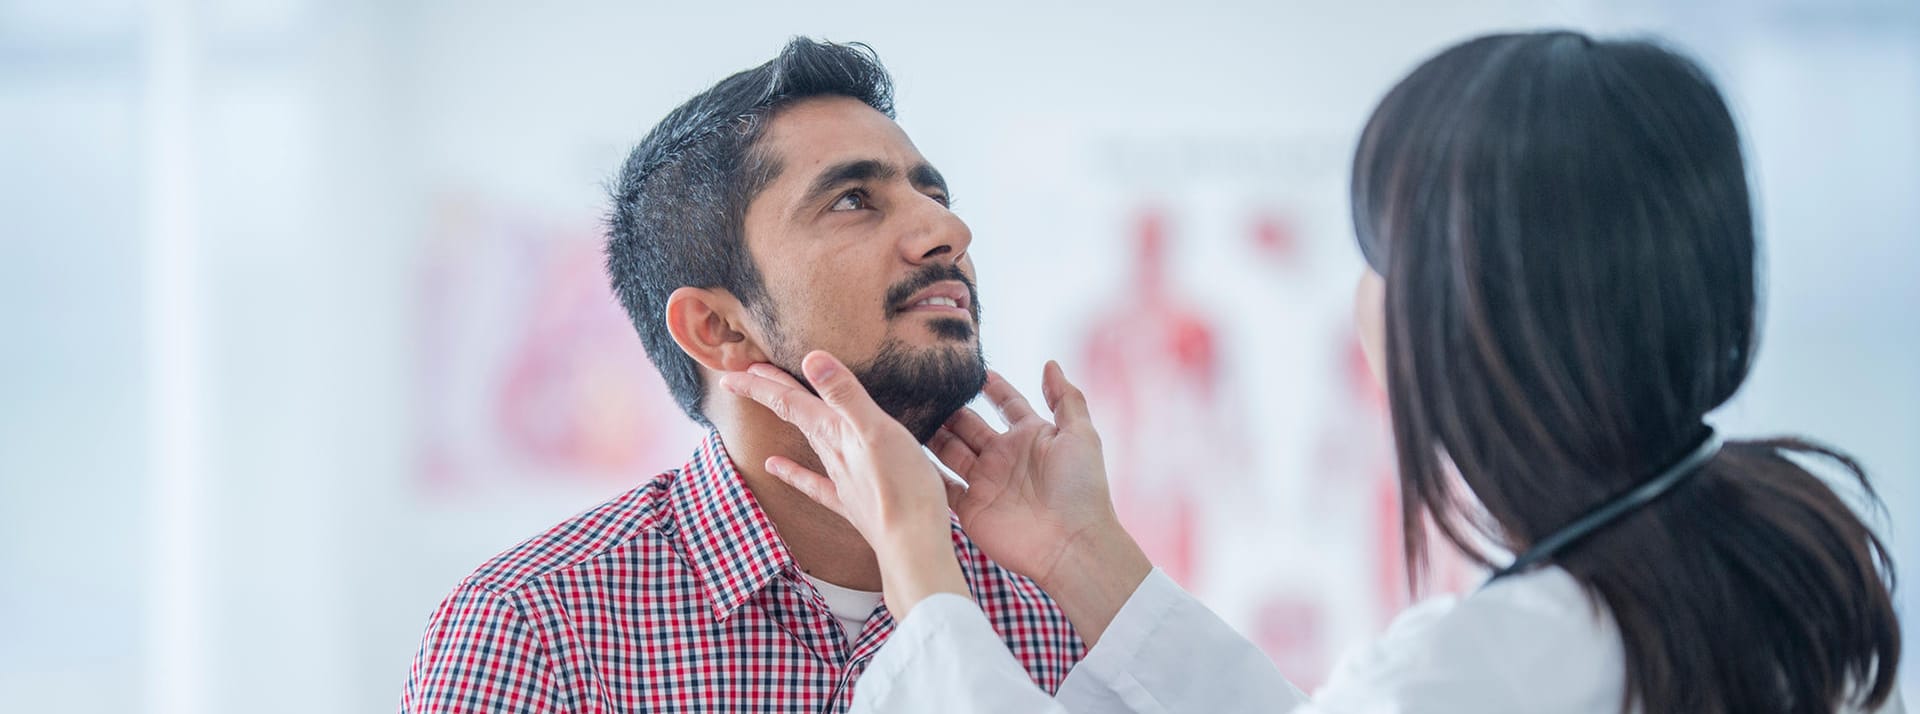 Ärztin untersucht die Lymphknoten am Hals eines Patienten.